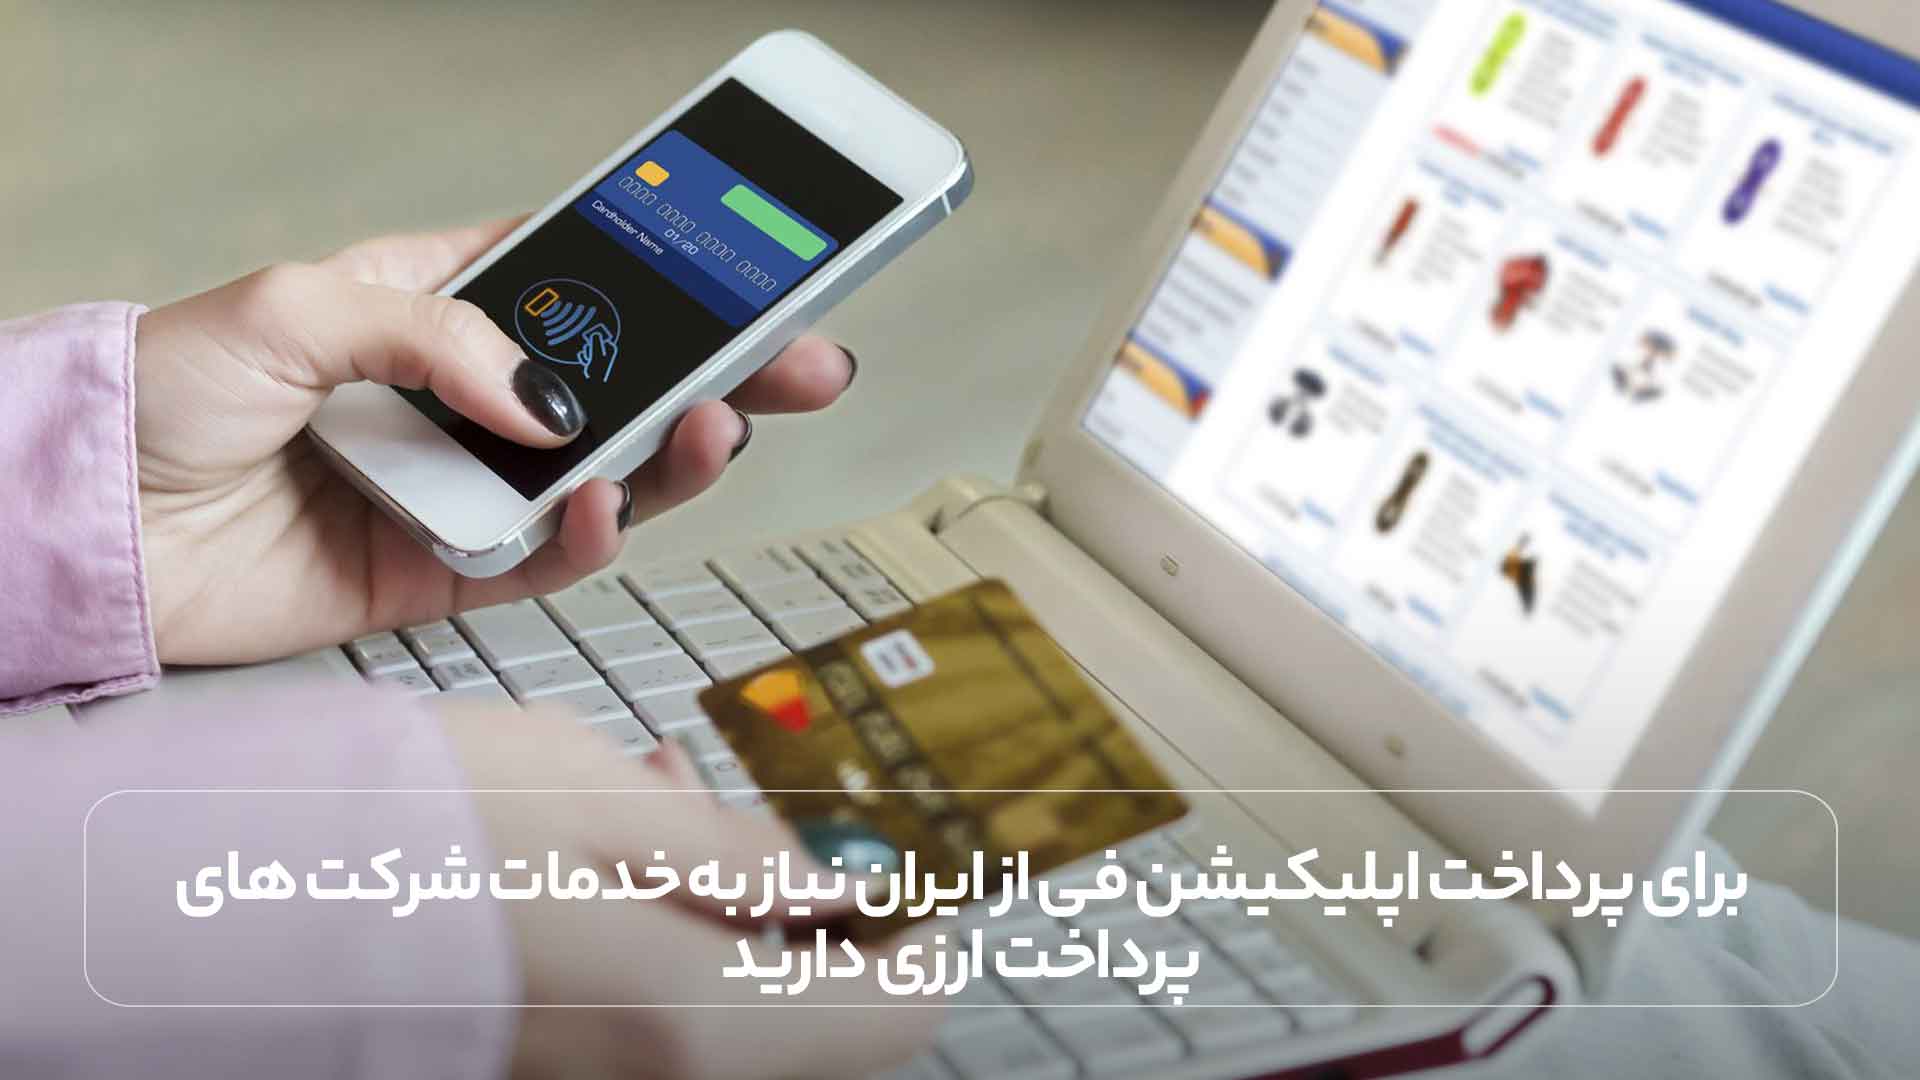 برای پرداخت اپلیکیشن فی از ایران نیاز به خدمات شرکت های پرداخت ارزی دارید